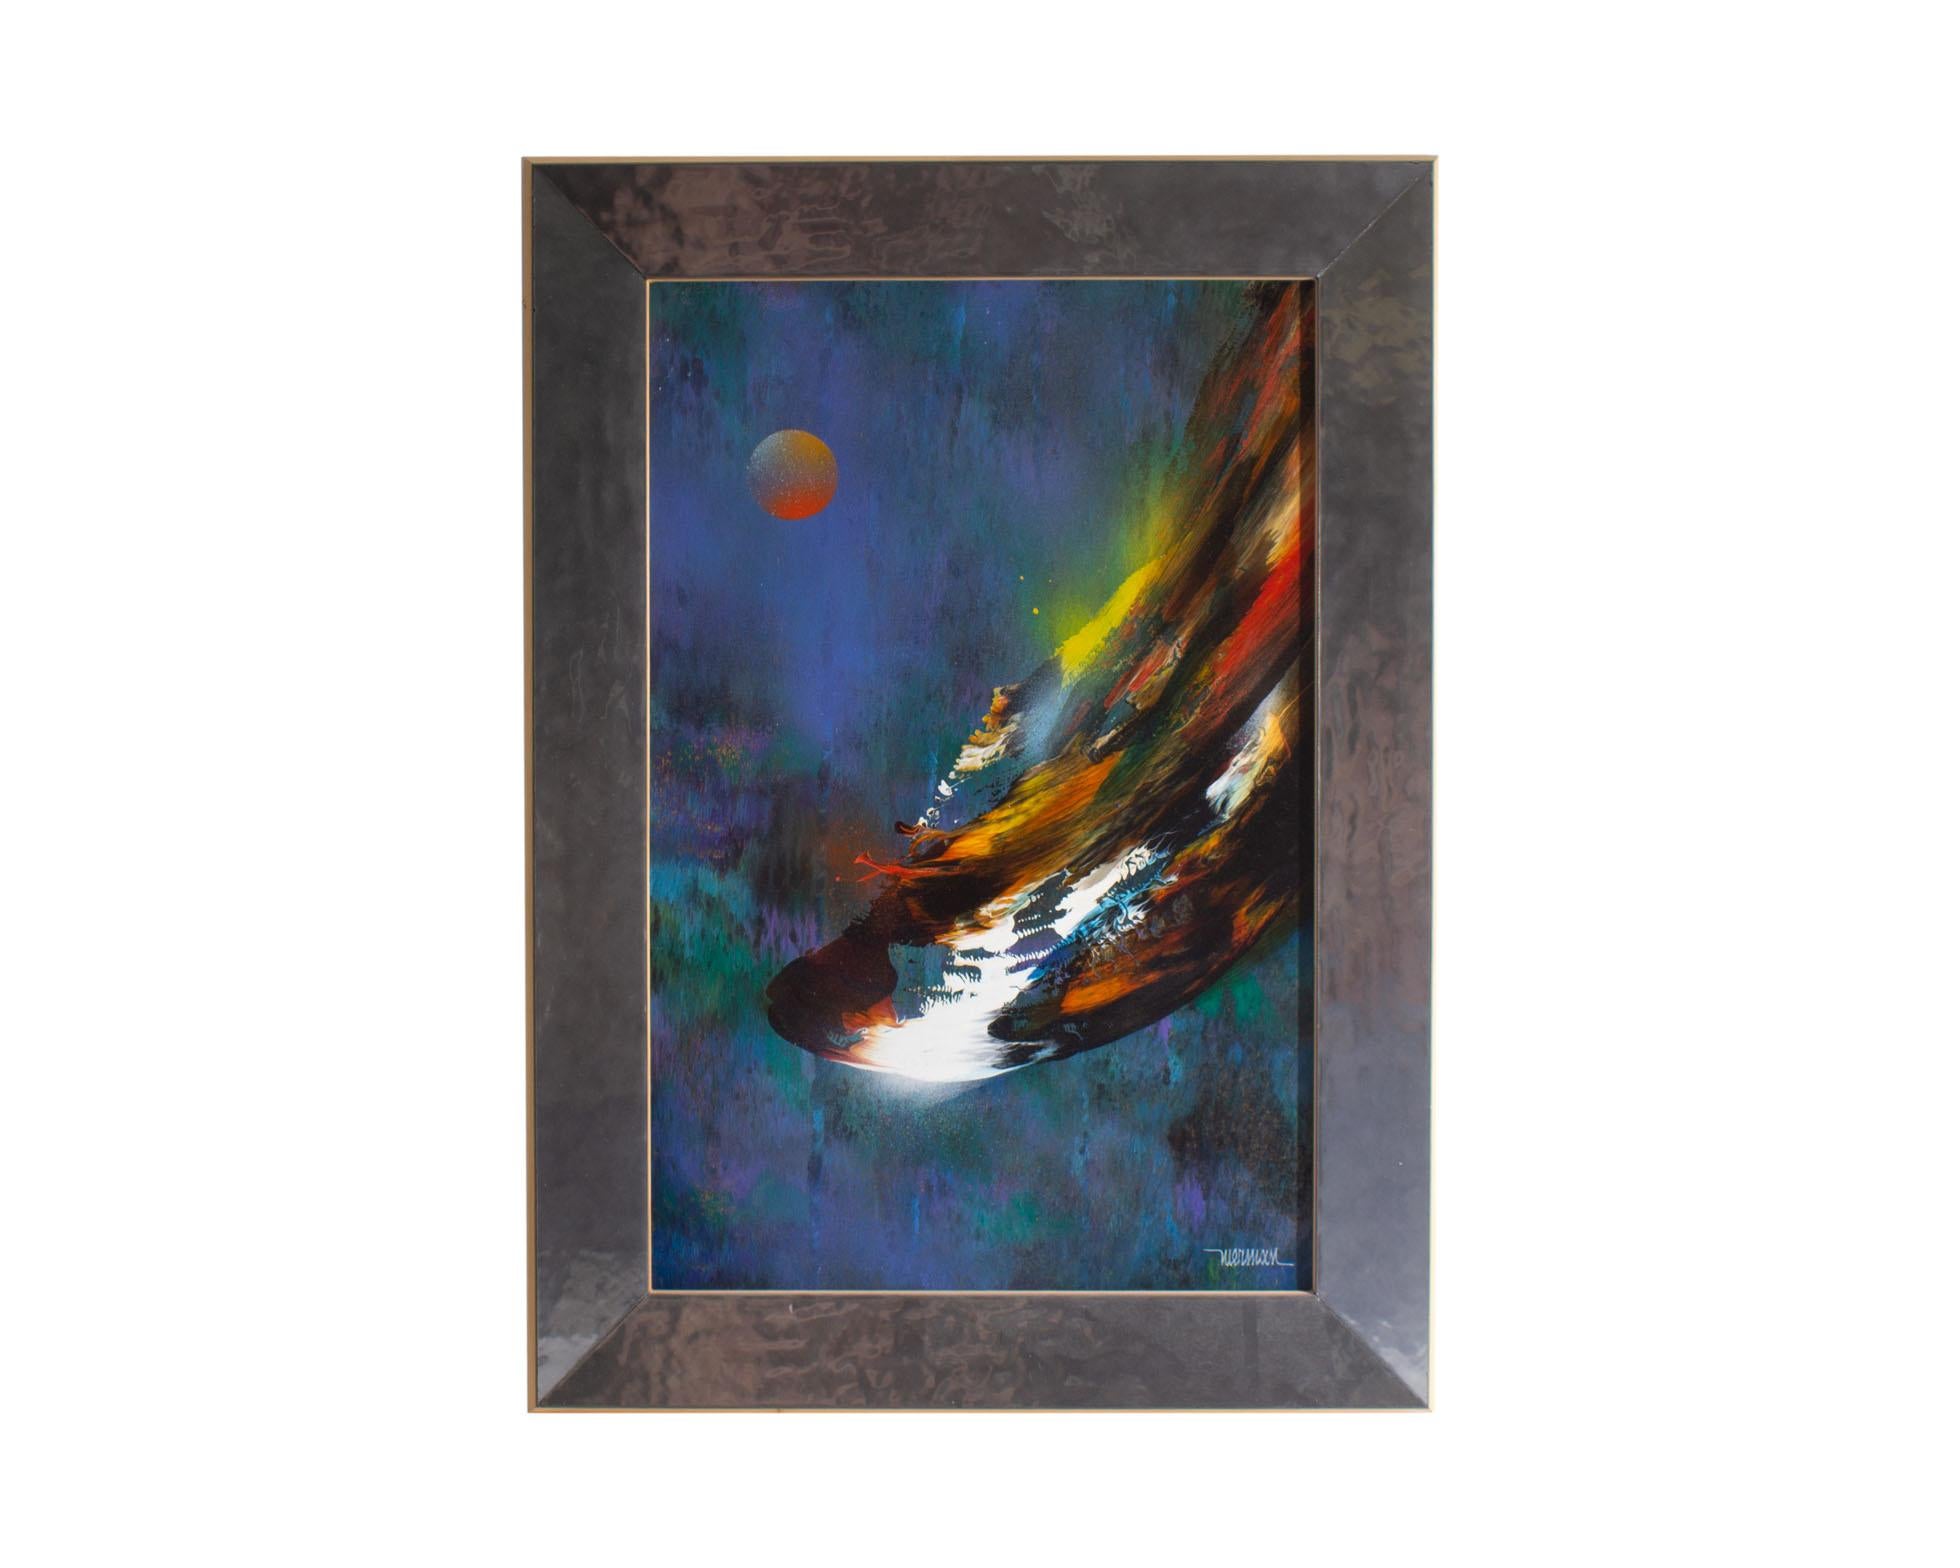 Peinture à l'huile sur panneau des années 1970 de l'artiste mexicain Leonardo Nierman (1932-2023). Intitulée Cosmic Wind (Vent cosmique), cette œuvre abstraite et vibrante représente une rafale de couleur s'élançant sur un fond froid de bleu, de